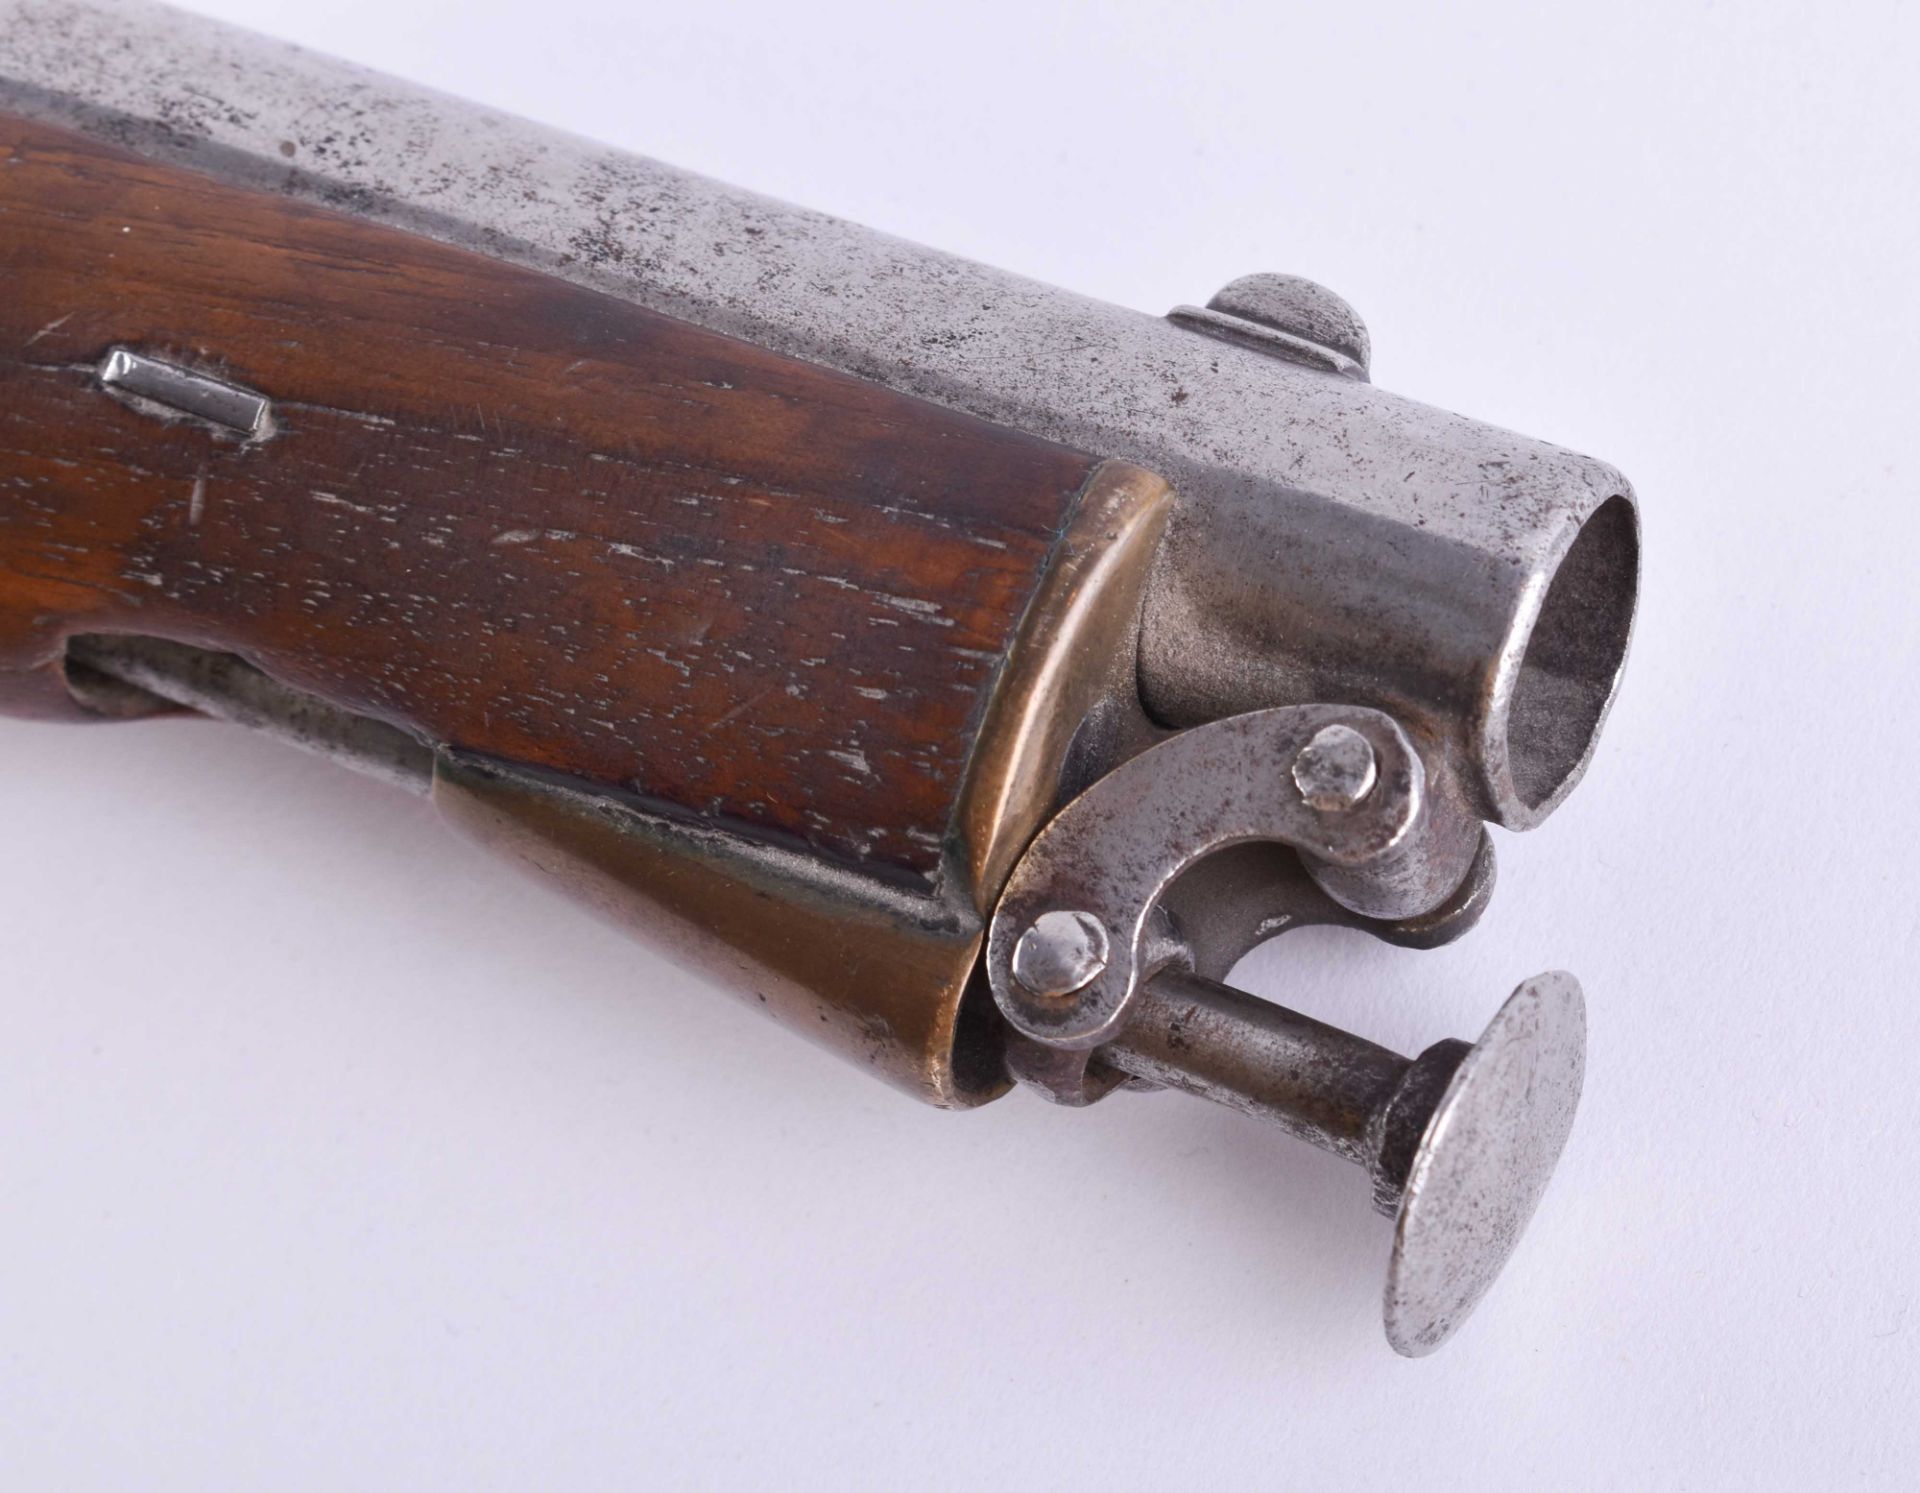 Vorderlader- Pistole um 1850/60 - Bild 5 aus 6